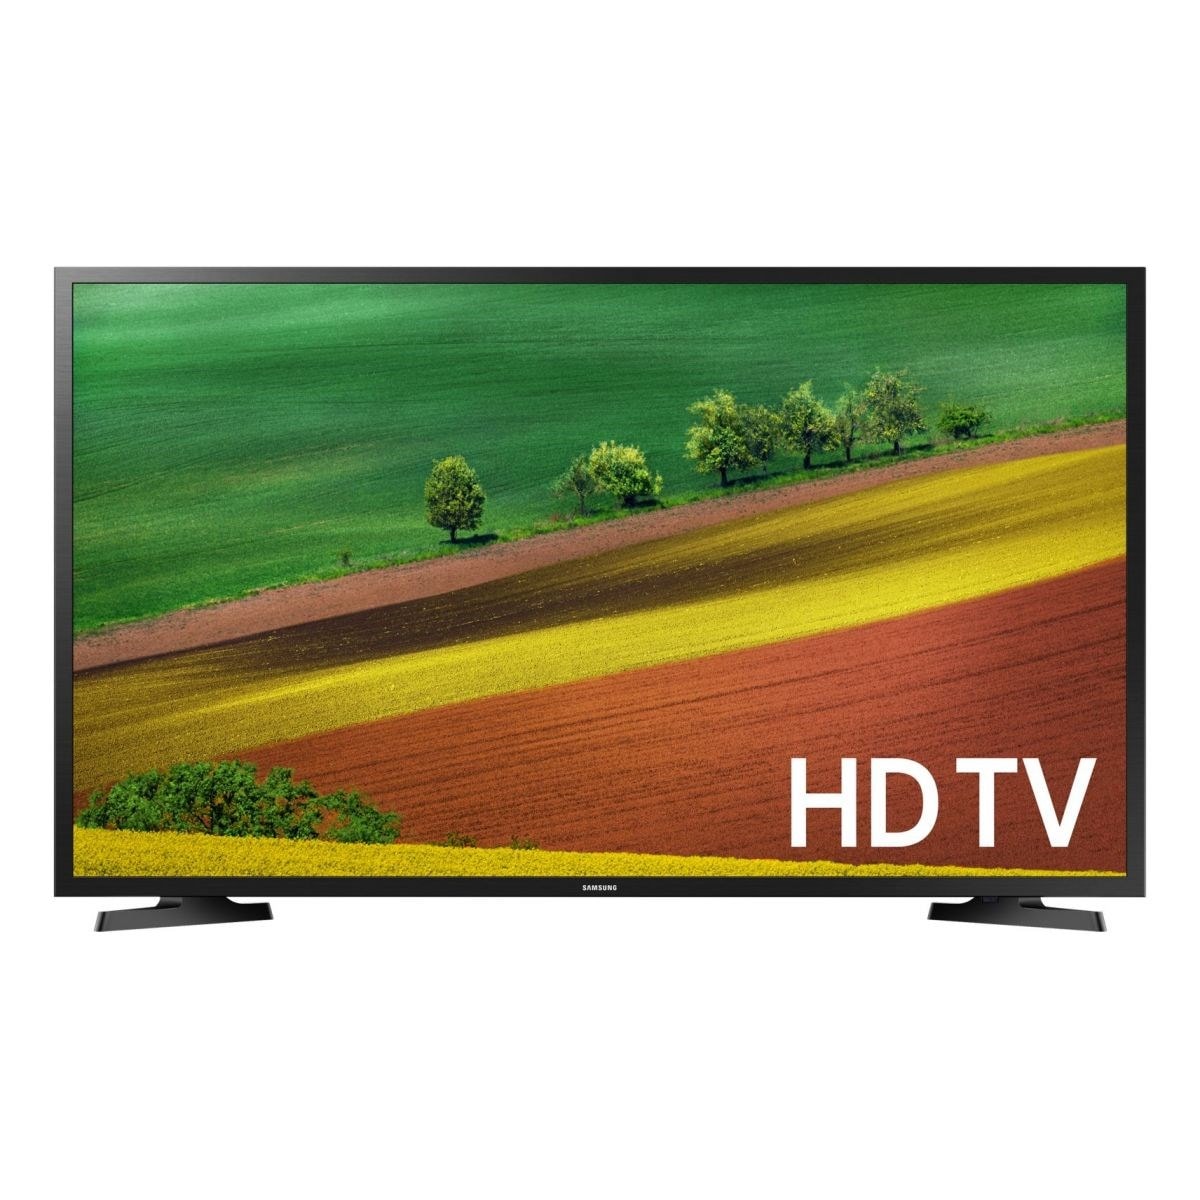 Télévision Smart Technology 32 pouces (80 cm) TV Led